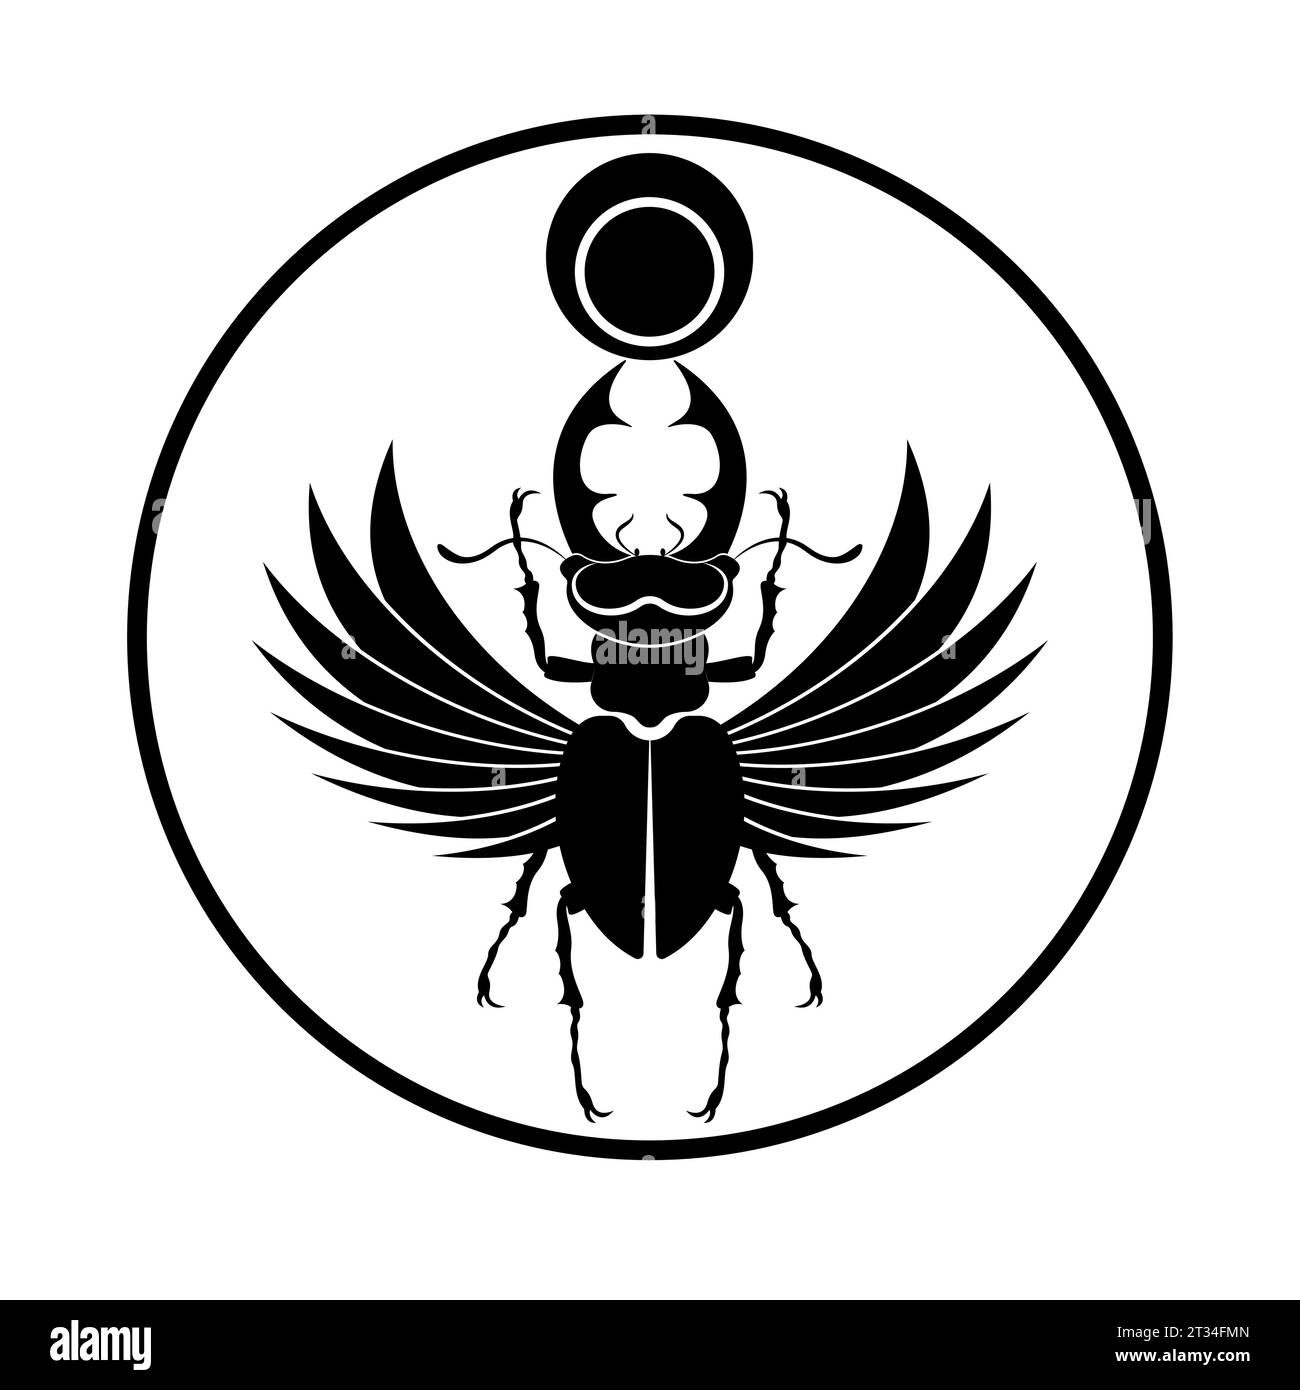 Ägyptischer heiliger Scarab Hirschkäfer Hörner mit Flügeln. Schwarzes Logo Silhouette Vektor Insekt isoliert auf einem weißen Hintergrund. Symbol des alten Ägyptens Stock Vektor